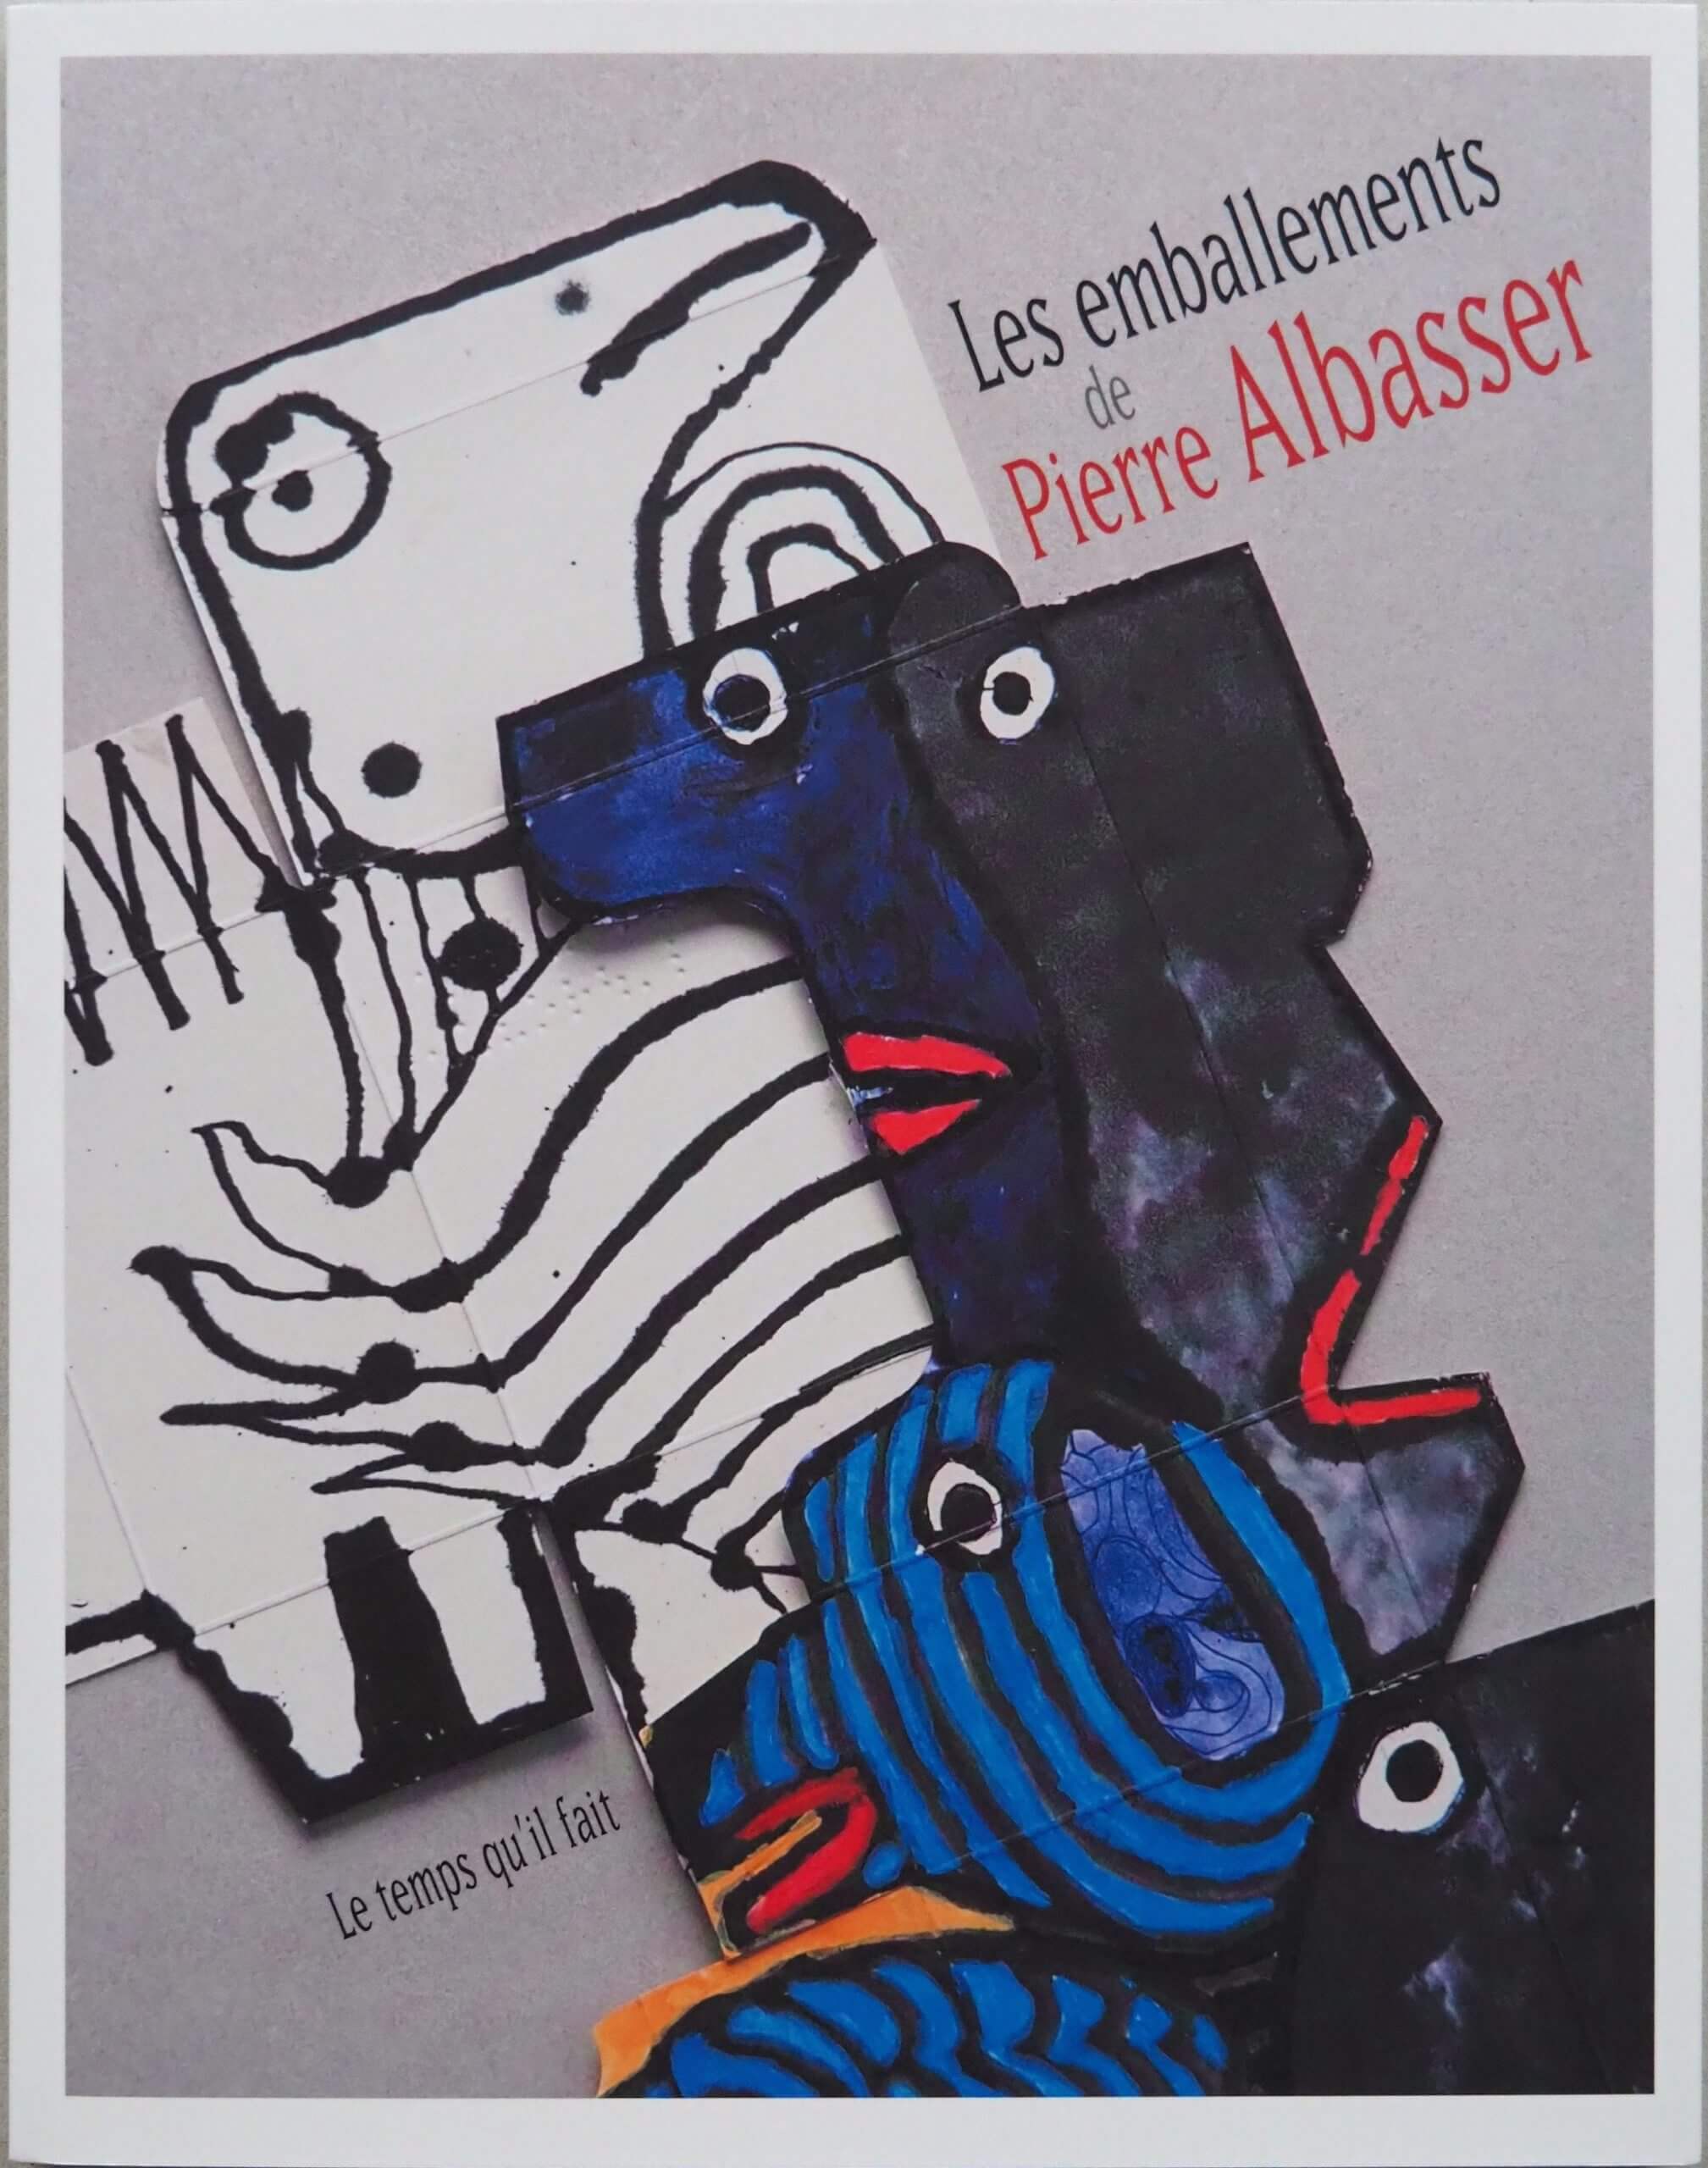 image de la couverture du livre consacré aux emballements de Pierre Albasser paru aux éditions le temps qu'il fait